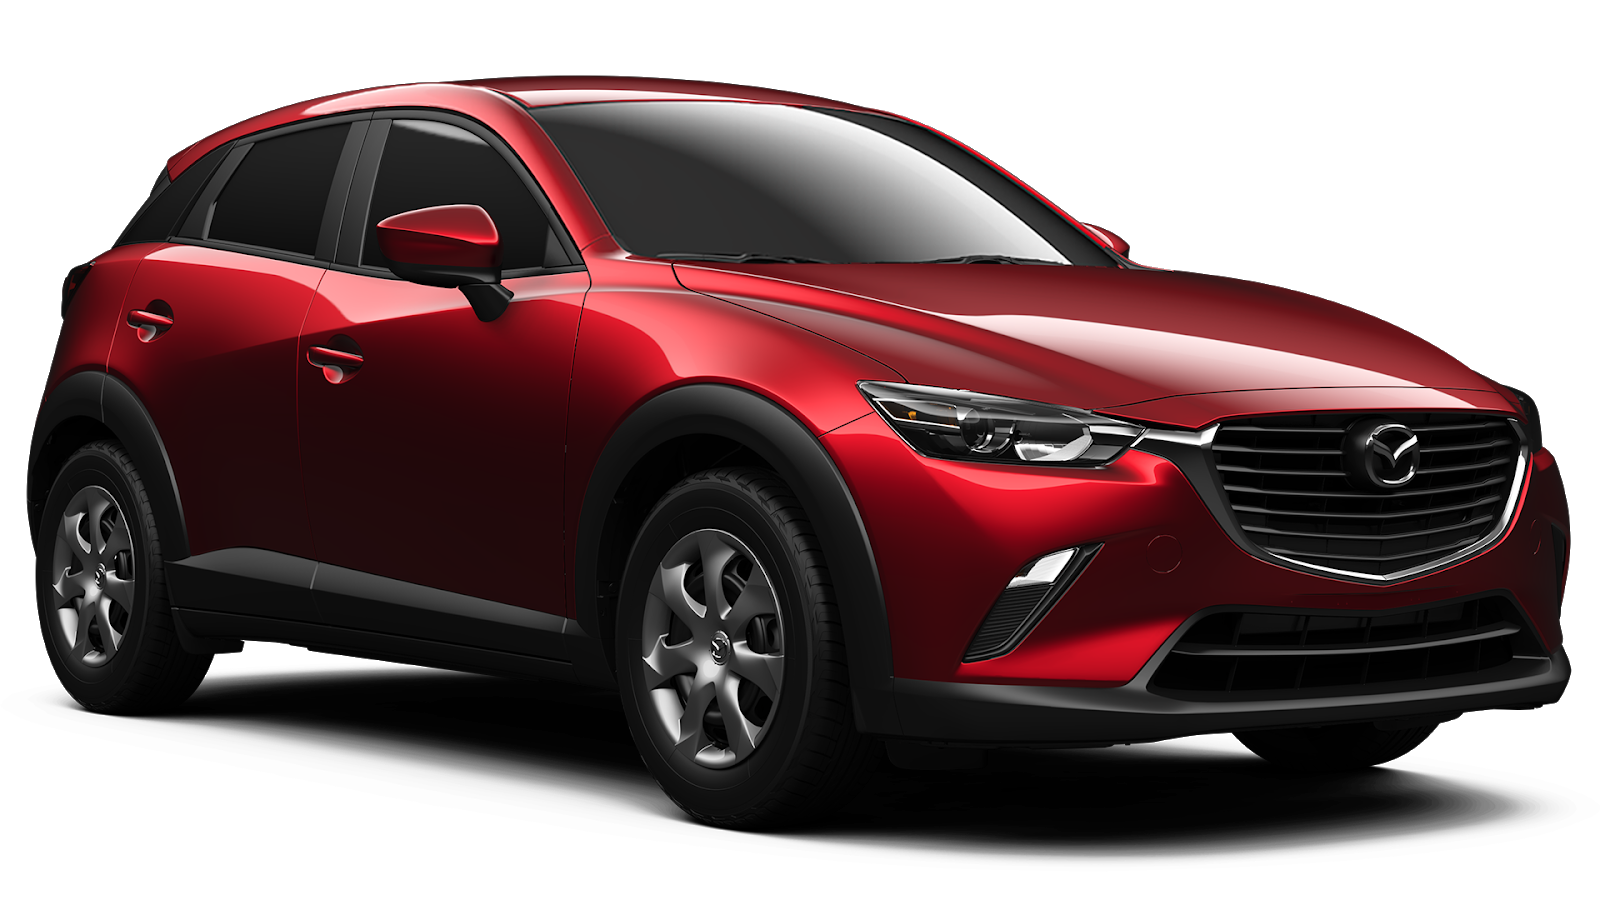 Harga Mazda CX 3 Spesifikasi Dan Review Terbaru Maret 2018